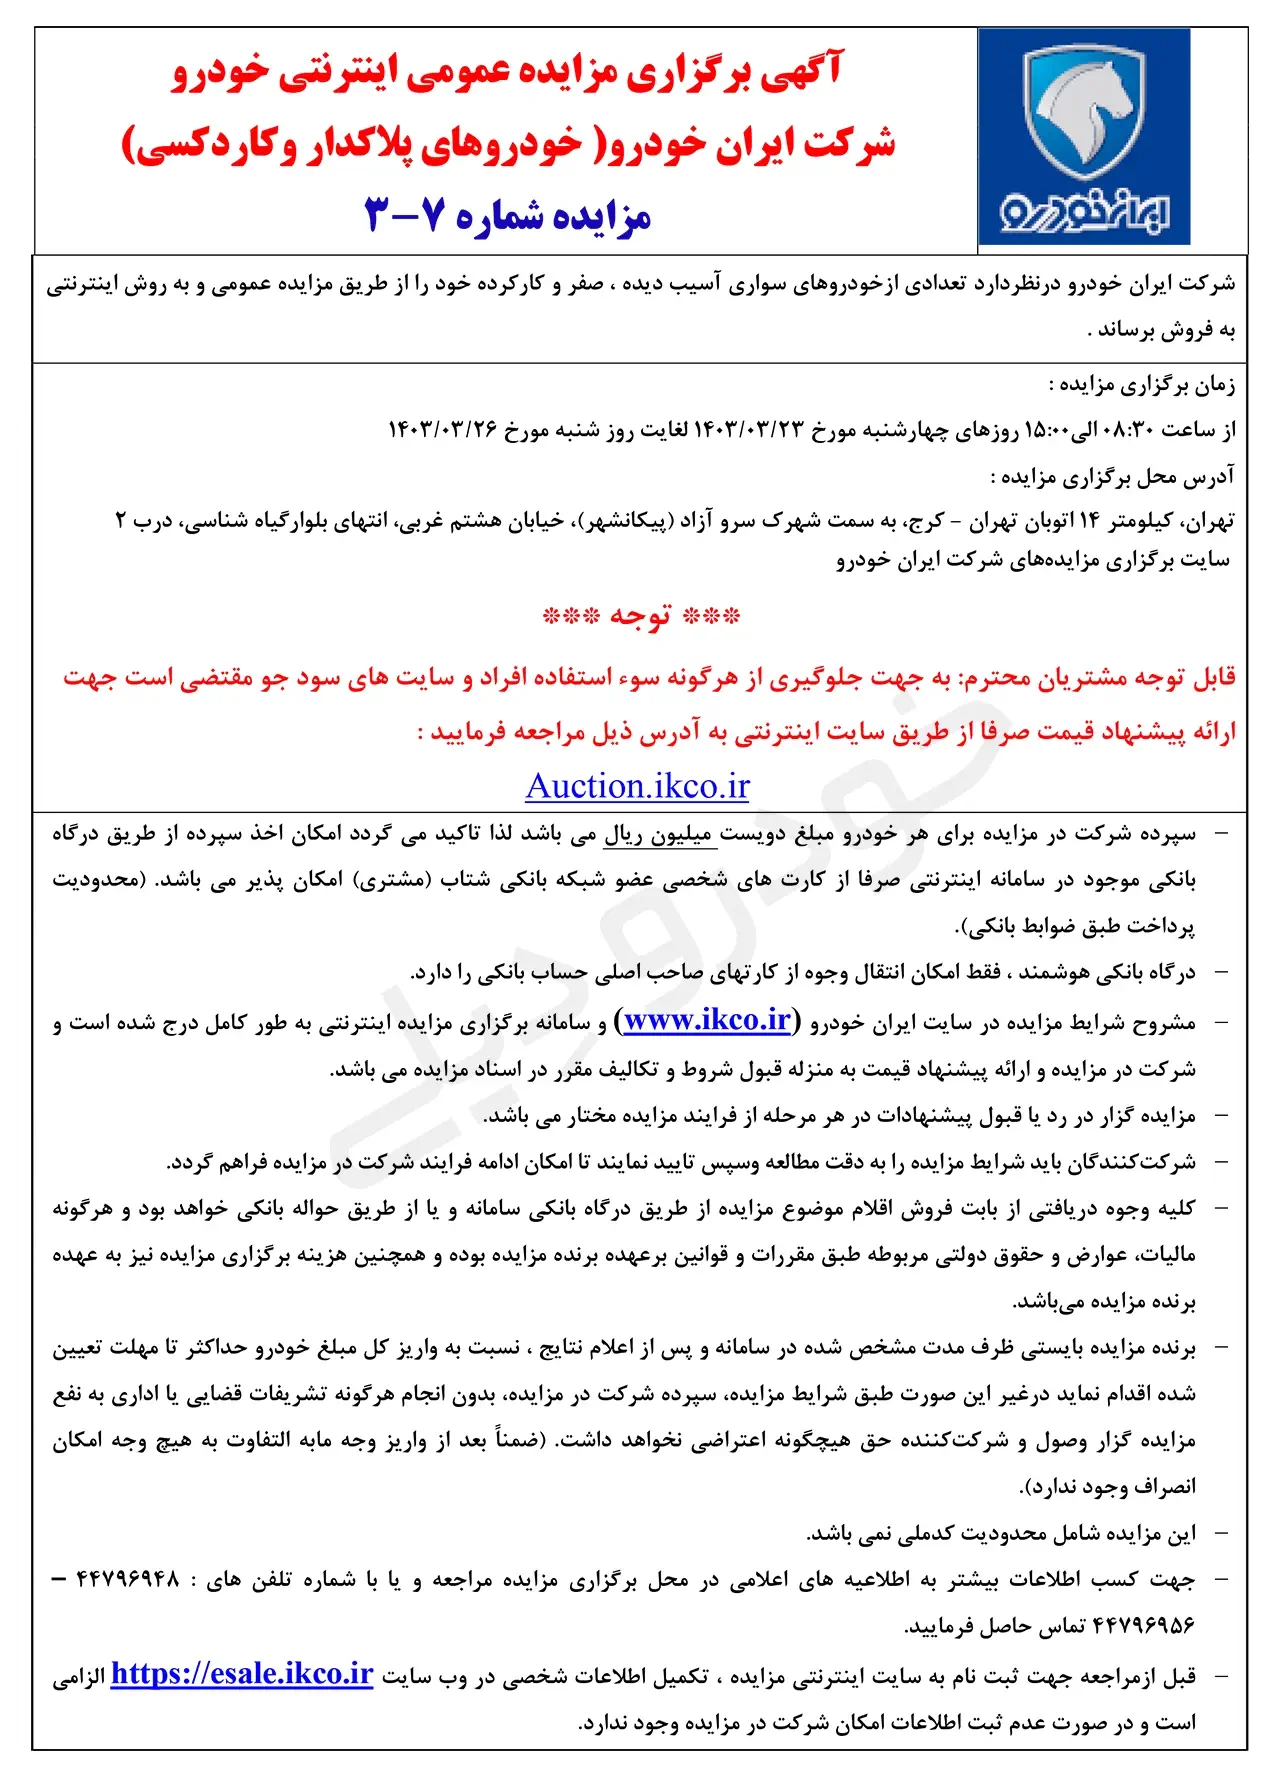 چهارشنبه ۲۳ خرداد الی شنبه ۲۶ خرداد برگزار می‌شود؛ مزایده ایران خودرو برای خودروهای پلاک‌دار و کاردکسی